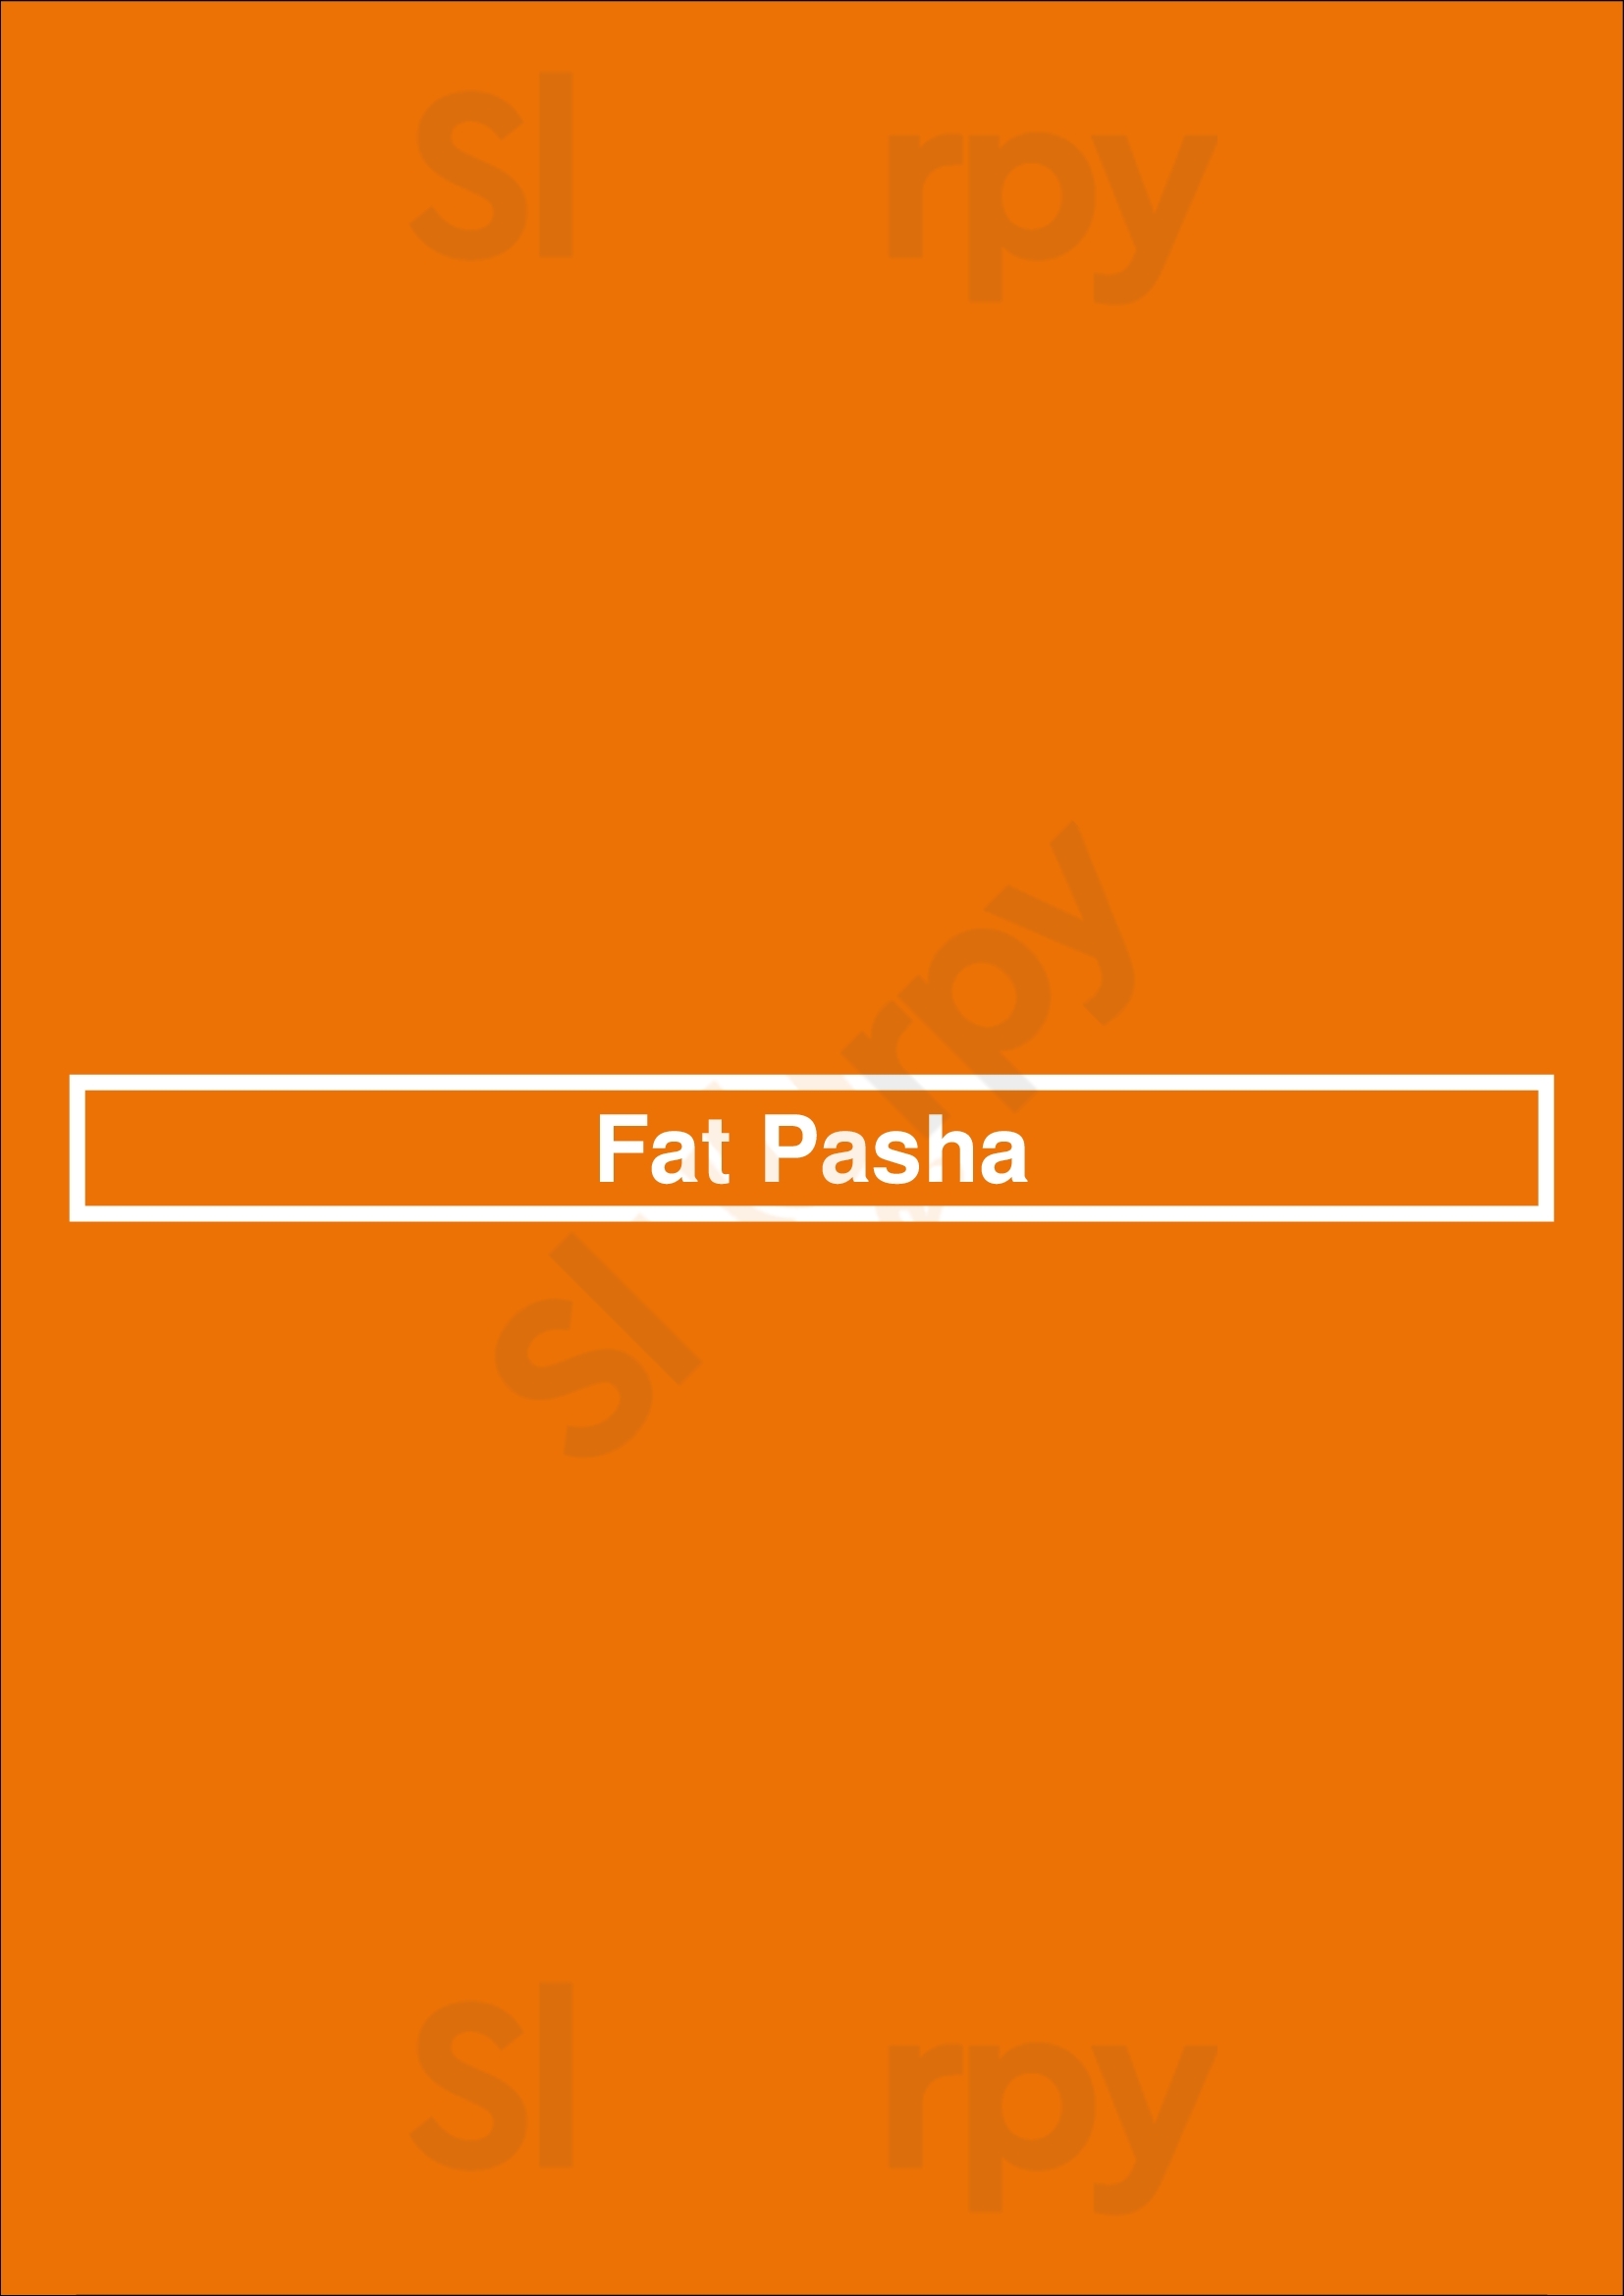 Fat Pasha Toronto Menu - 1